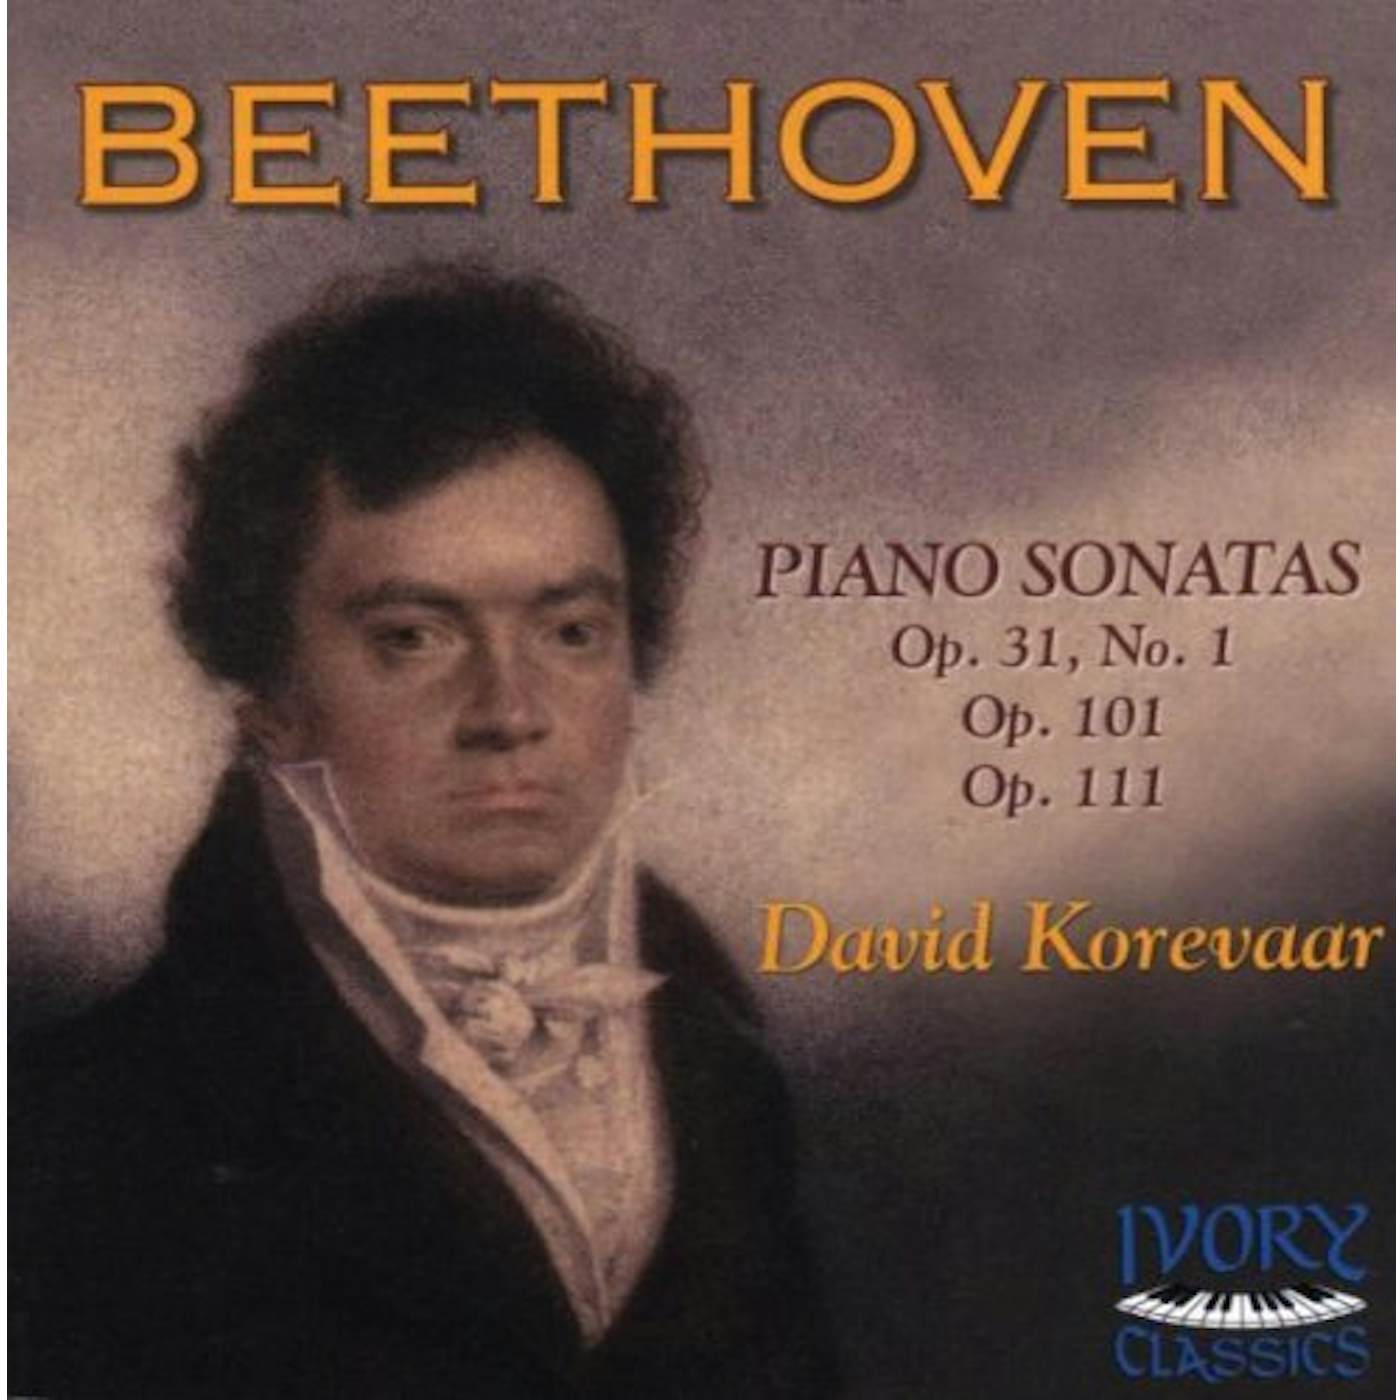 DAVID KOREVAAR PLAYS BEETHOVEN CD